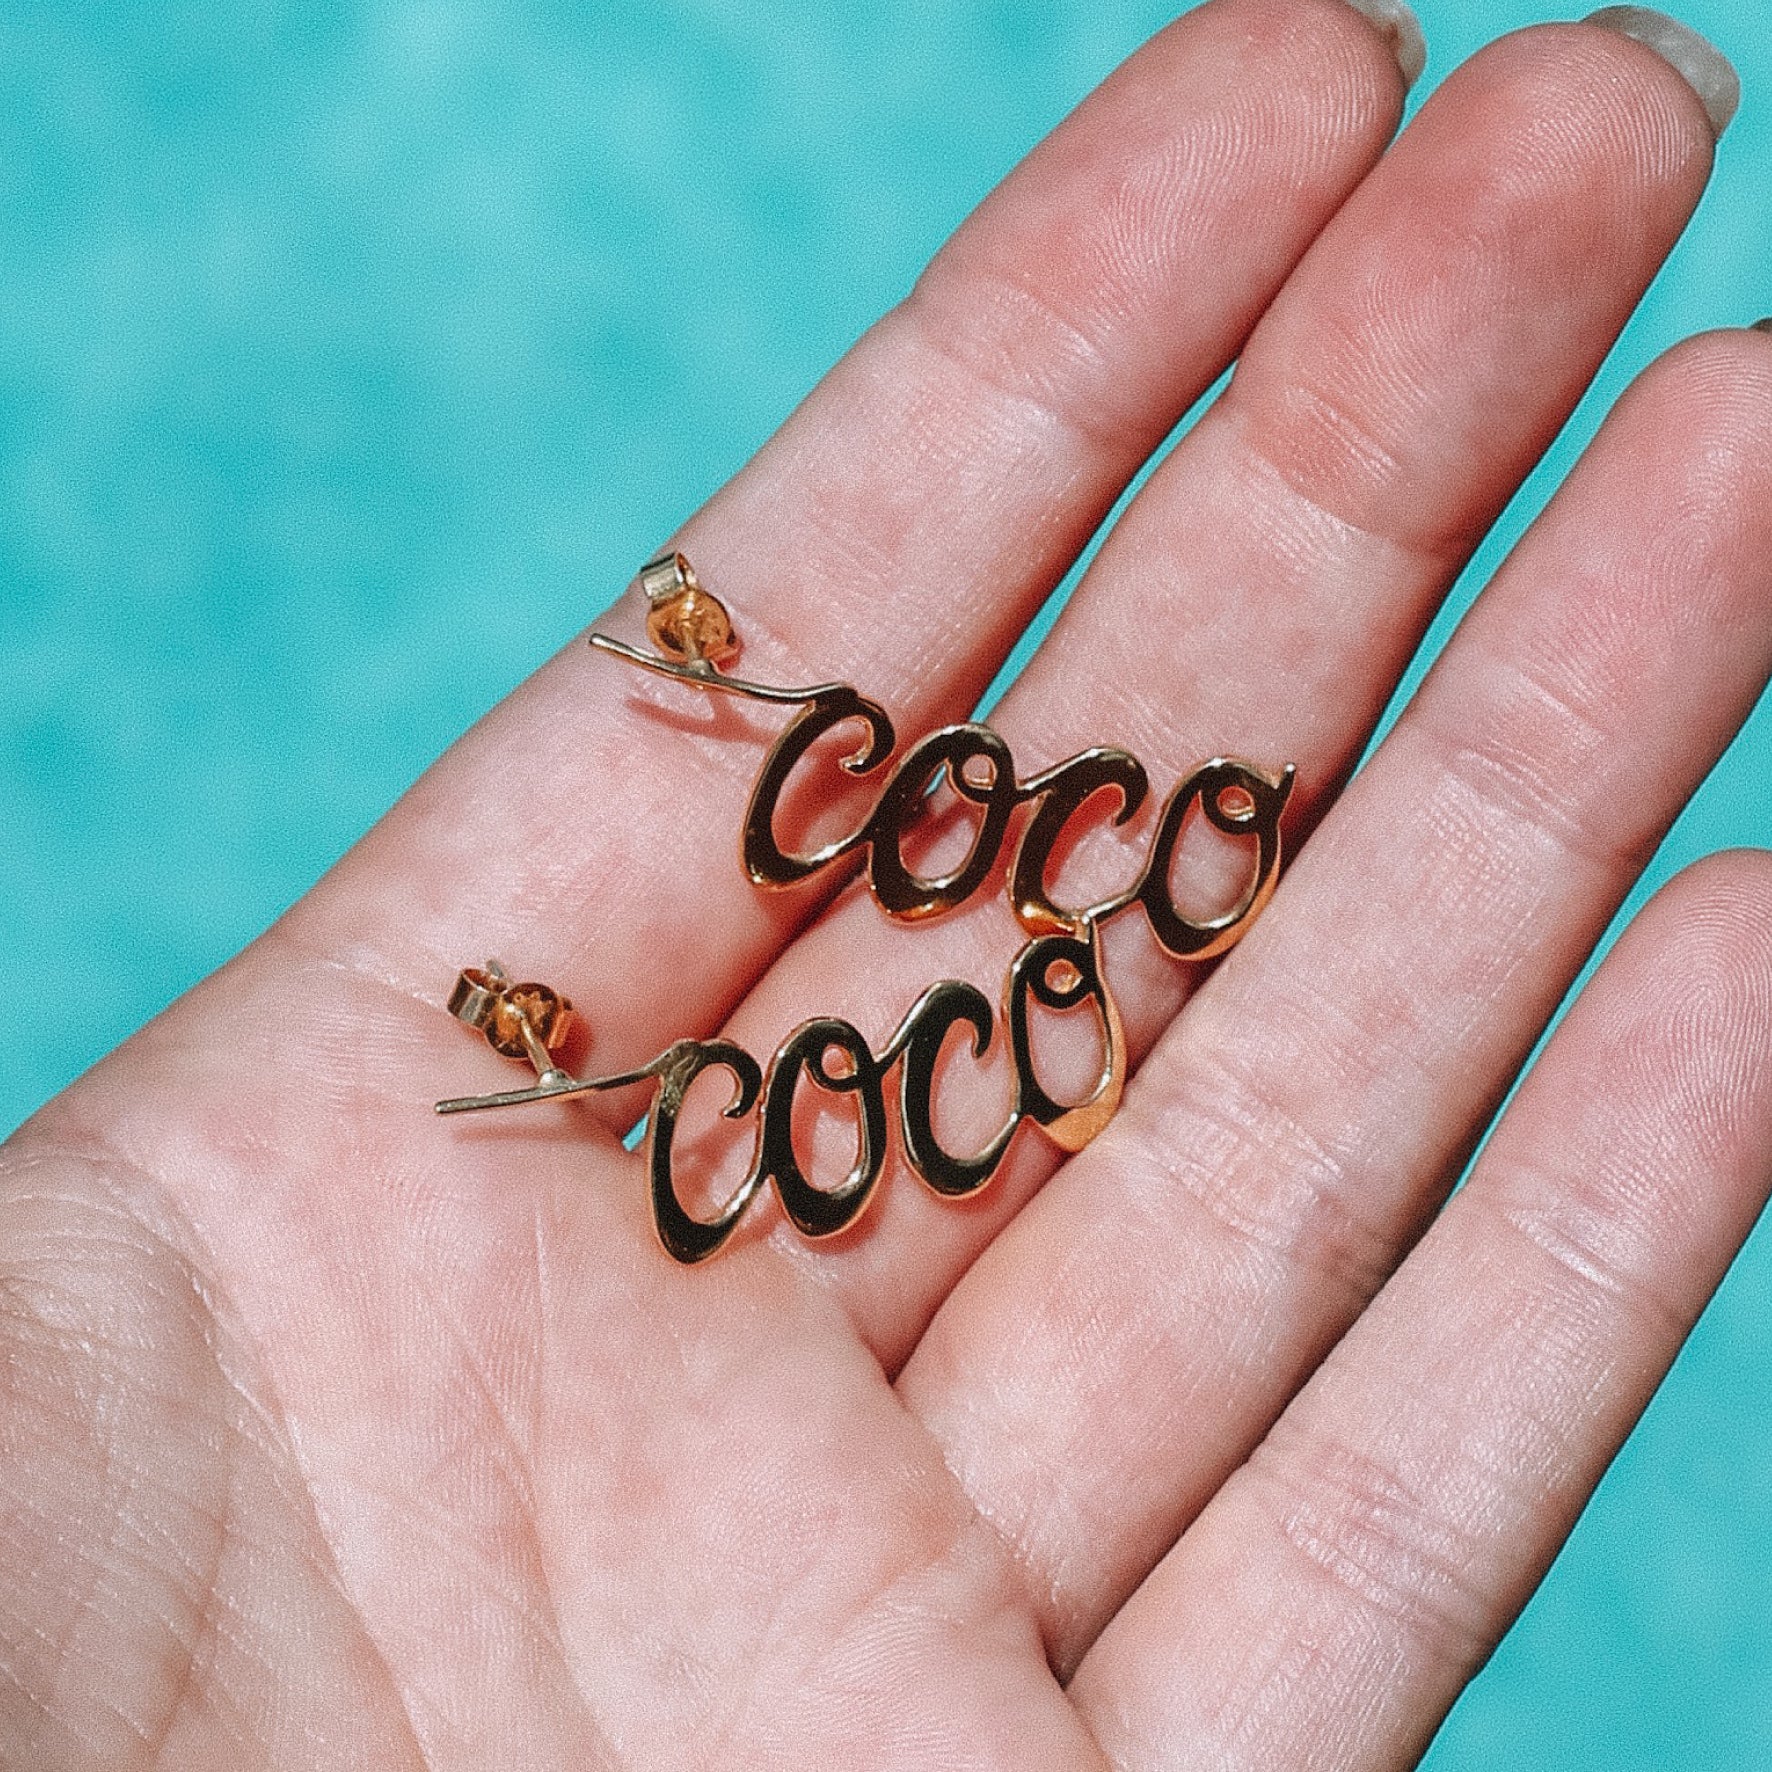 COCO Earrings by La Luna Rsoe - Recycled Sterling Silver